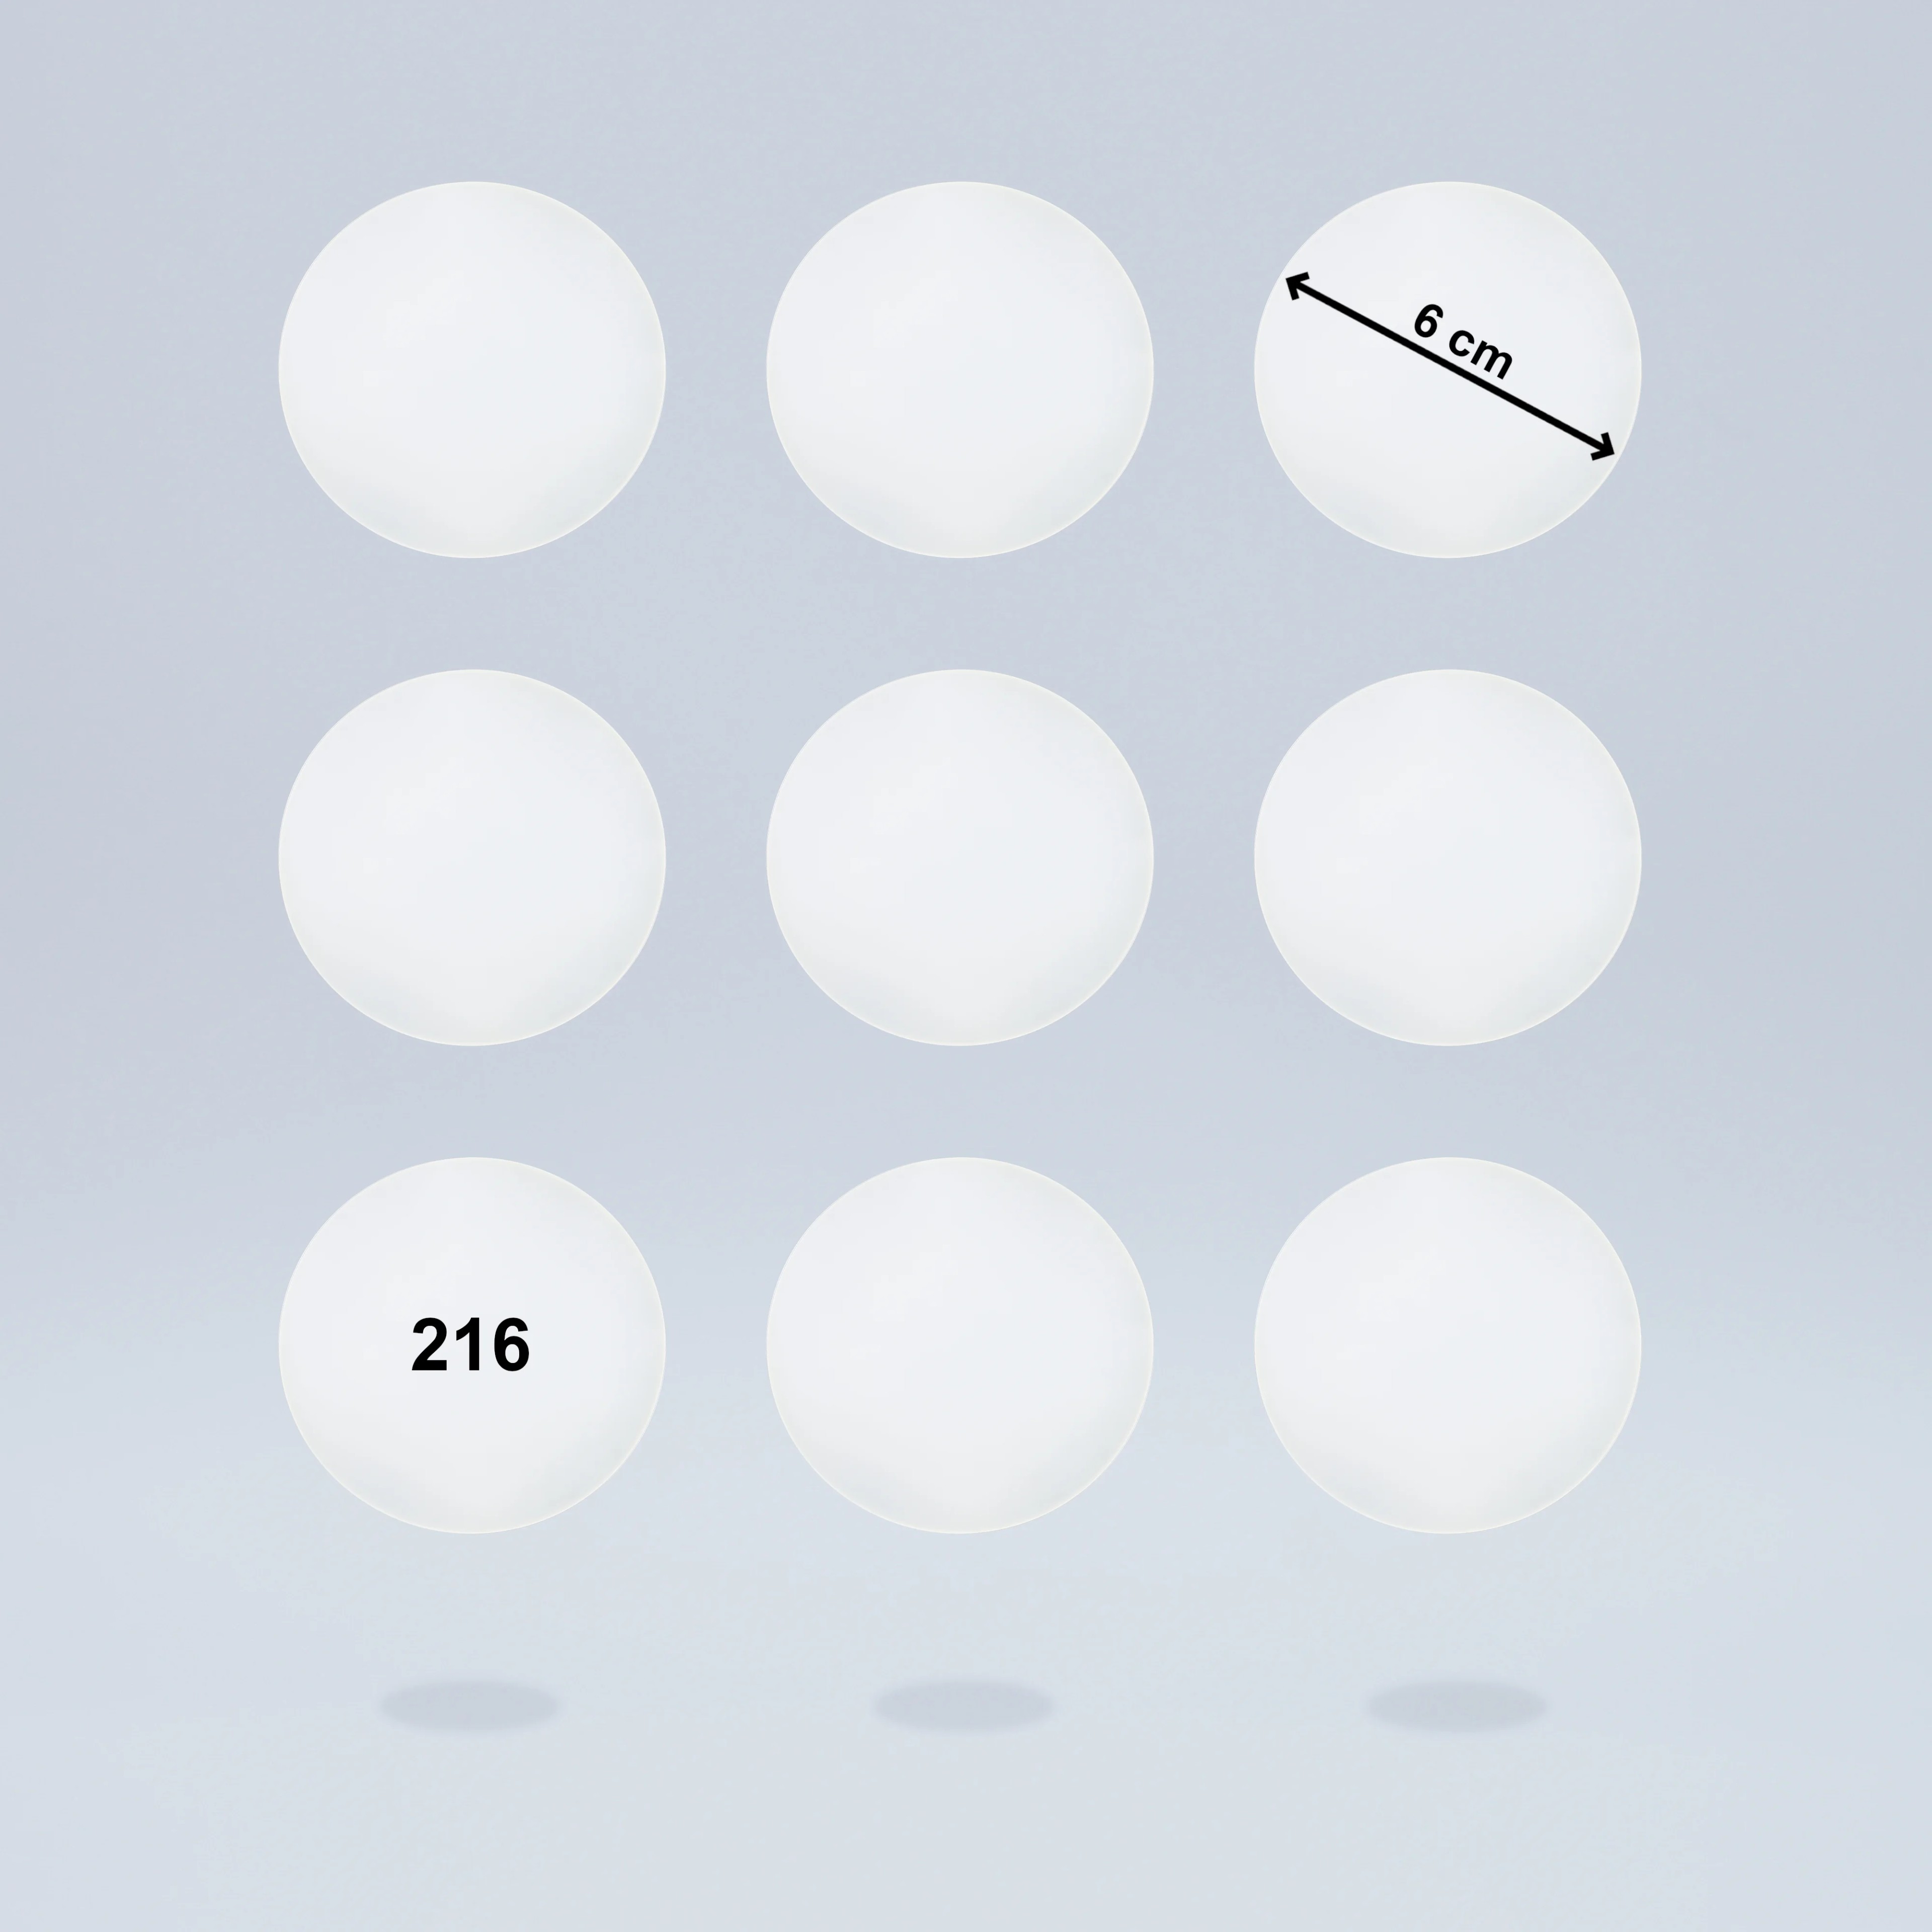 Selbstklebende Diffusorfolien für LED Lampen, ⌀6 CM Kreiszuschnitt, Milchglasfolie für schöne Optik und Lichtstreuung, Filterset mit 9 Stück